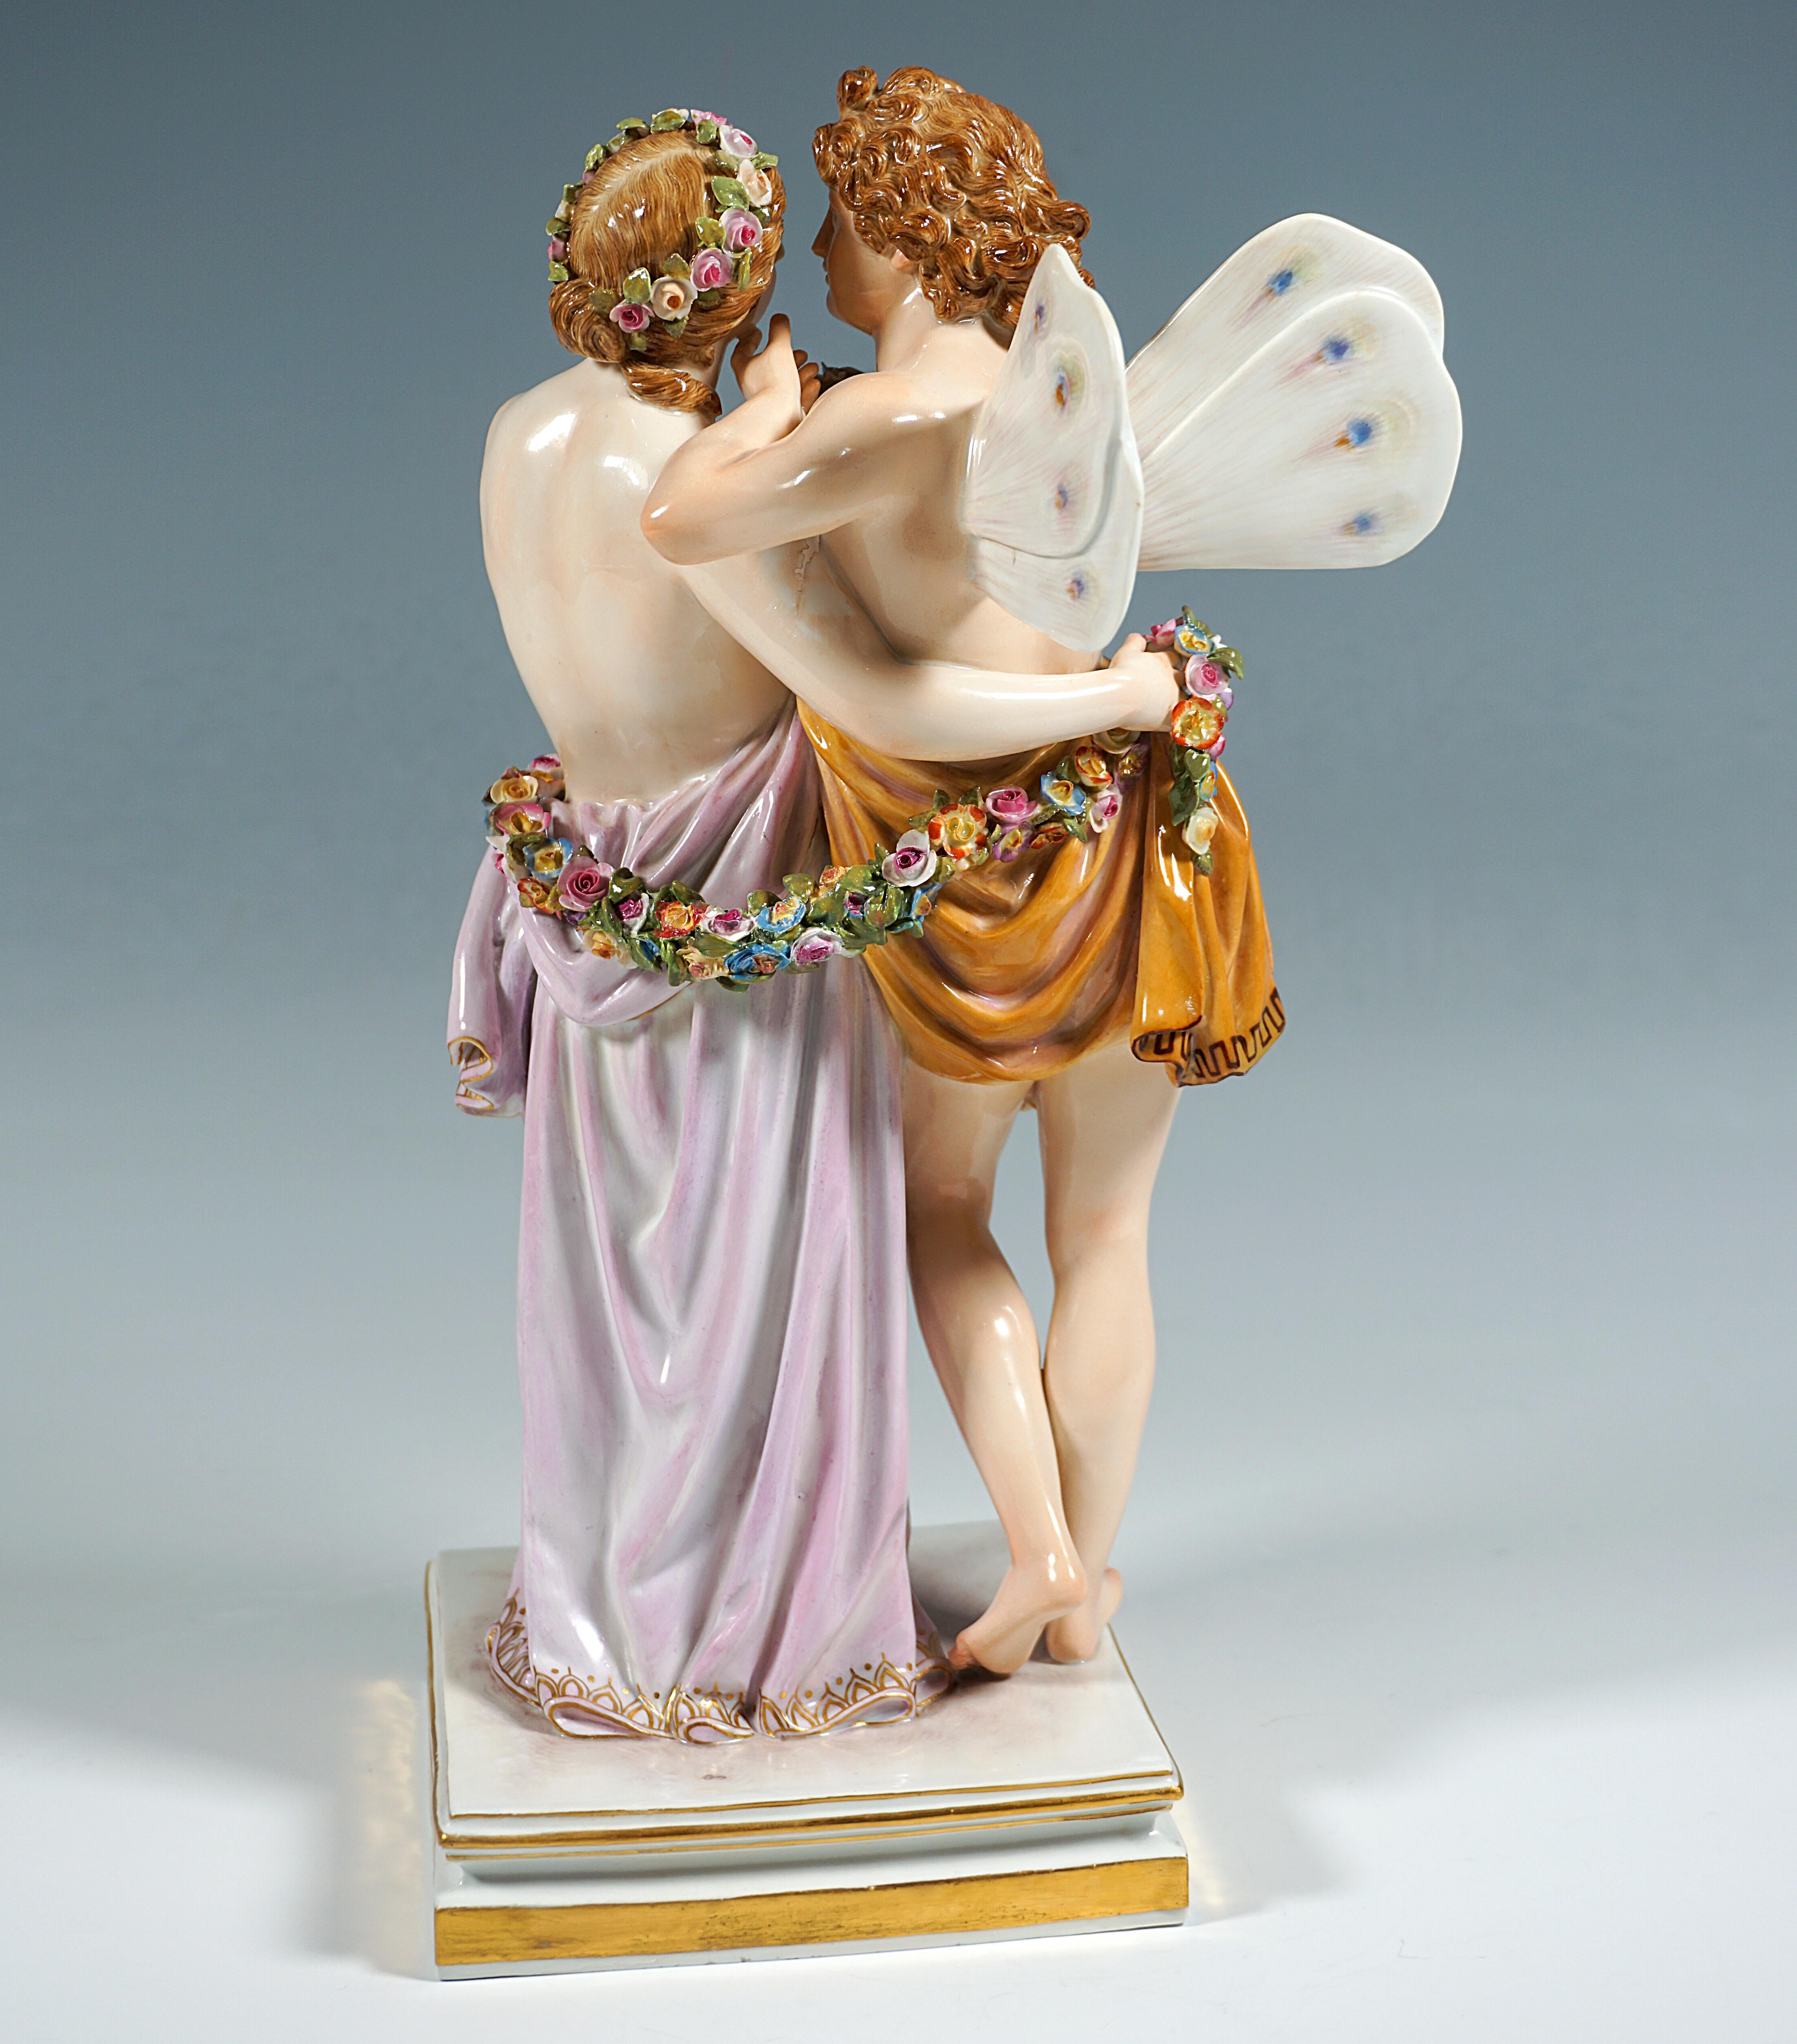 Classical Greek Meissen Porcelain Large Figurine Group 'Zephyr & Flora' By C.G. Juechtzer C.1860 For Sale